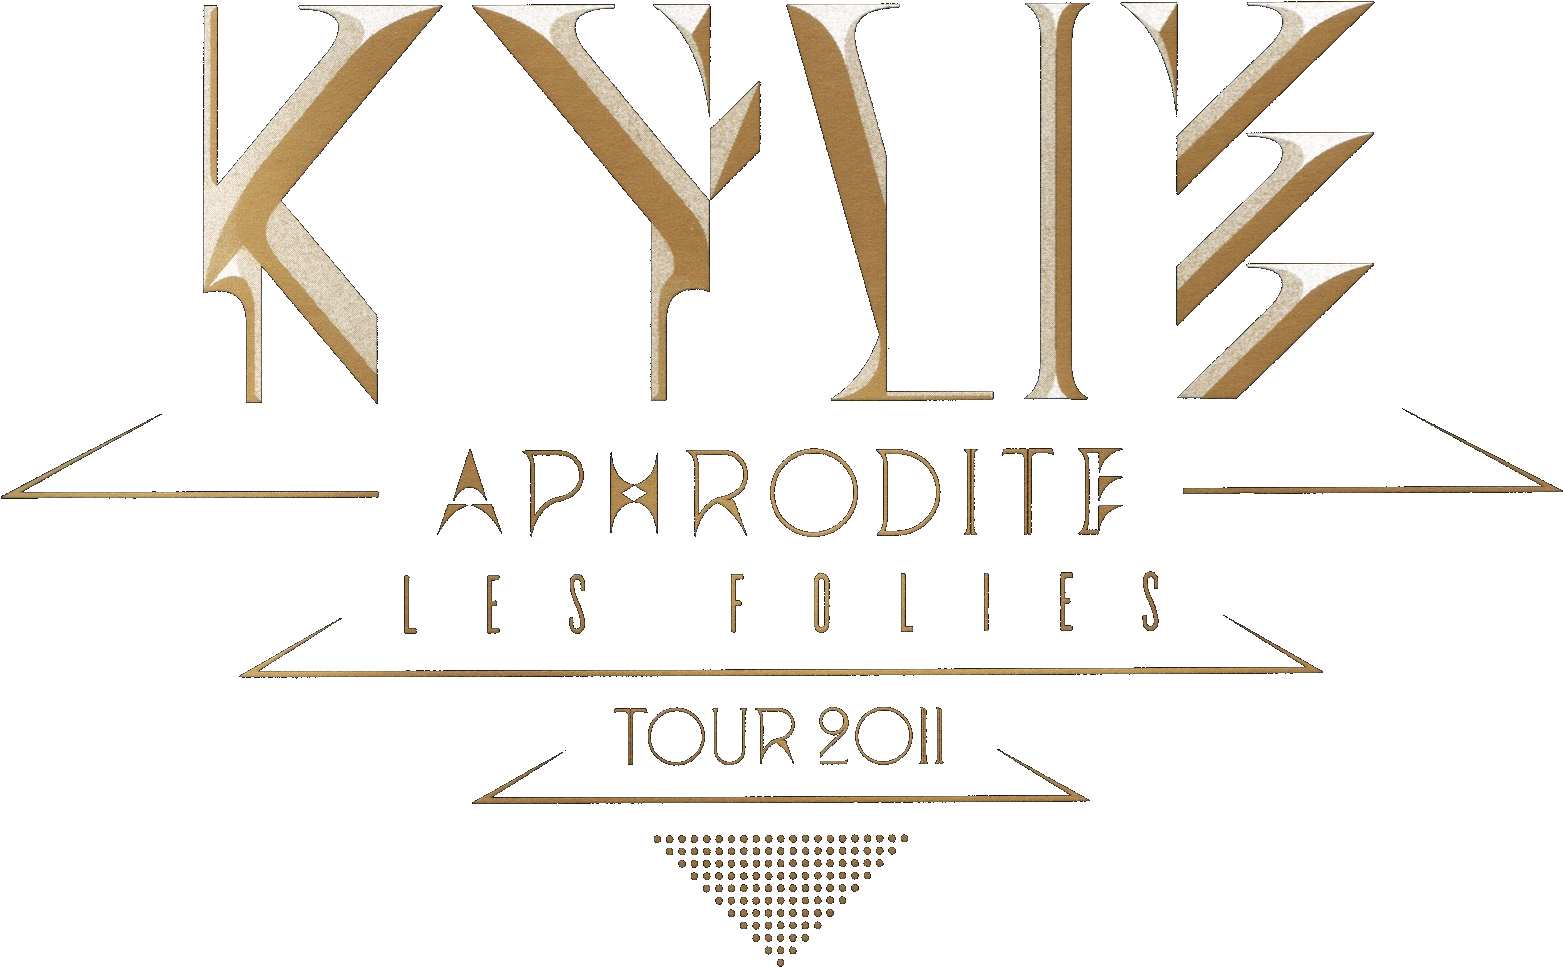 Aphrodite Les Folies - Kylie Minogue Les Folies Clipart (1600x997), Png Download